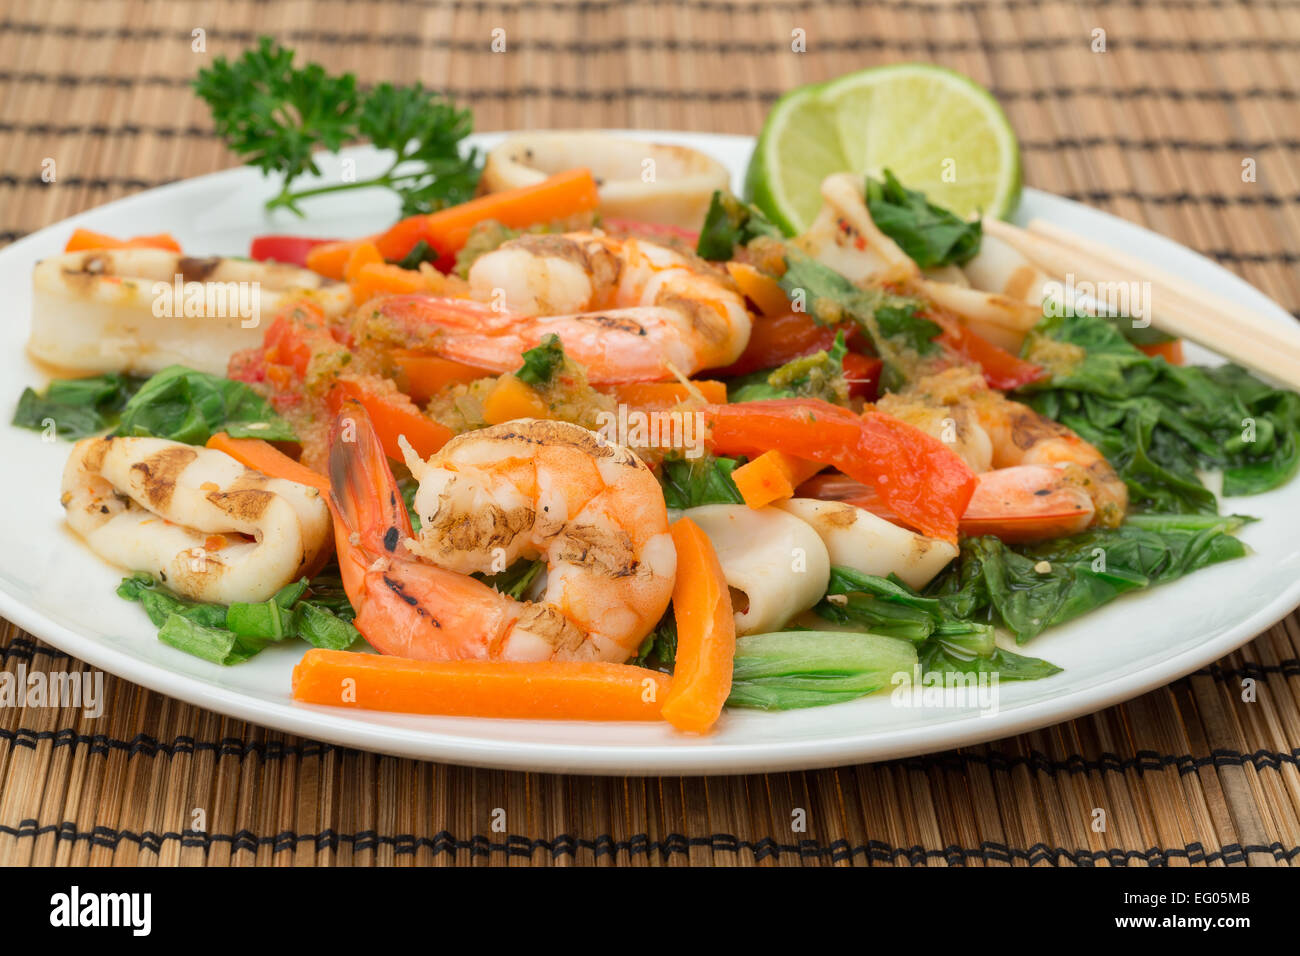 La cuisine vietnamienne - Assiette de calamars cuits au feu et langoustines avec des lamelles de carottes, poivrons rouges, et pak choi Banque D'Images